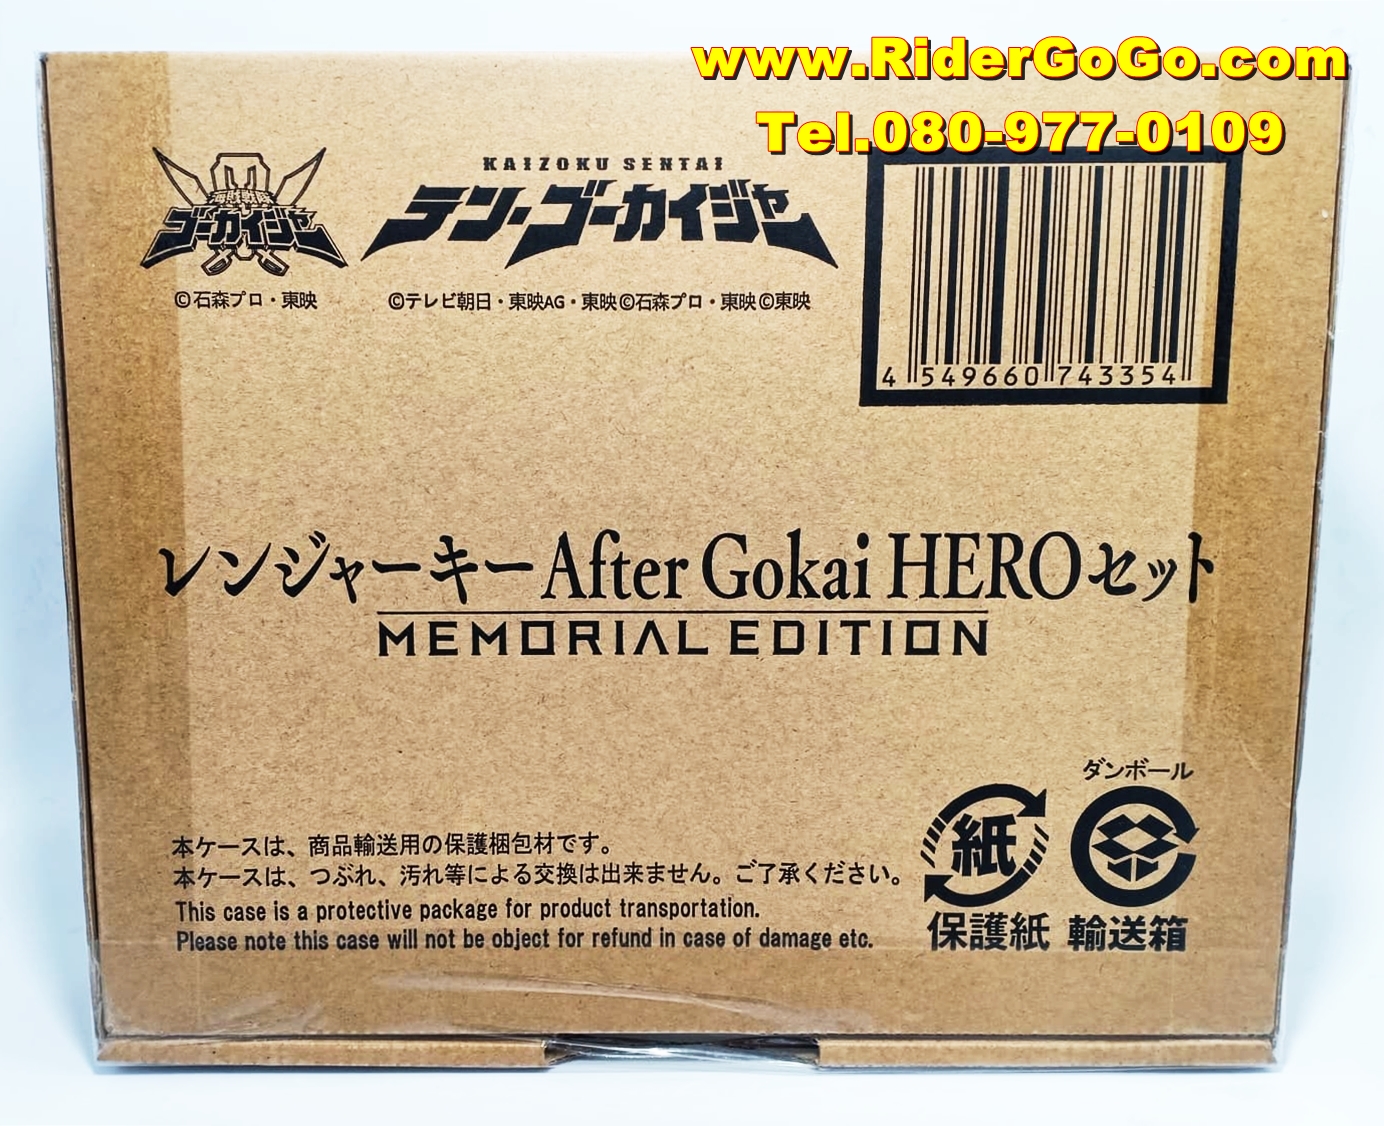 ชุดเรนเจอร์คีย์ ขบวนการโกไคเจอร์ รุ่นพิเศษฉลองครบรอบ 10ปี Premium Bandai After Gokai Hero Set Ranger Keys Memorial Edition ของใหม่ของแท้จากประเทศญี่ปุ่น รูปที่ 1